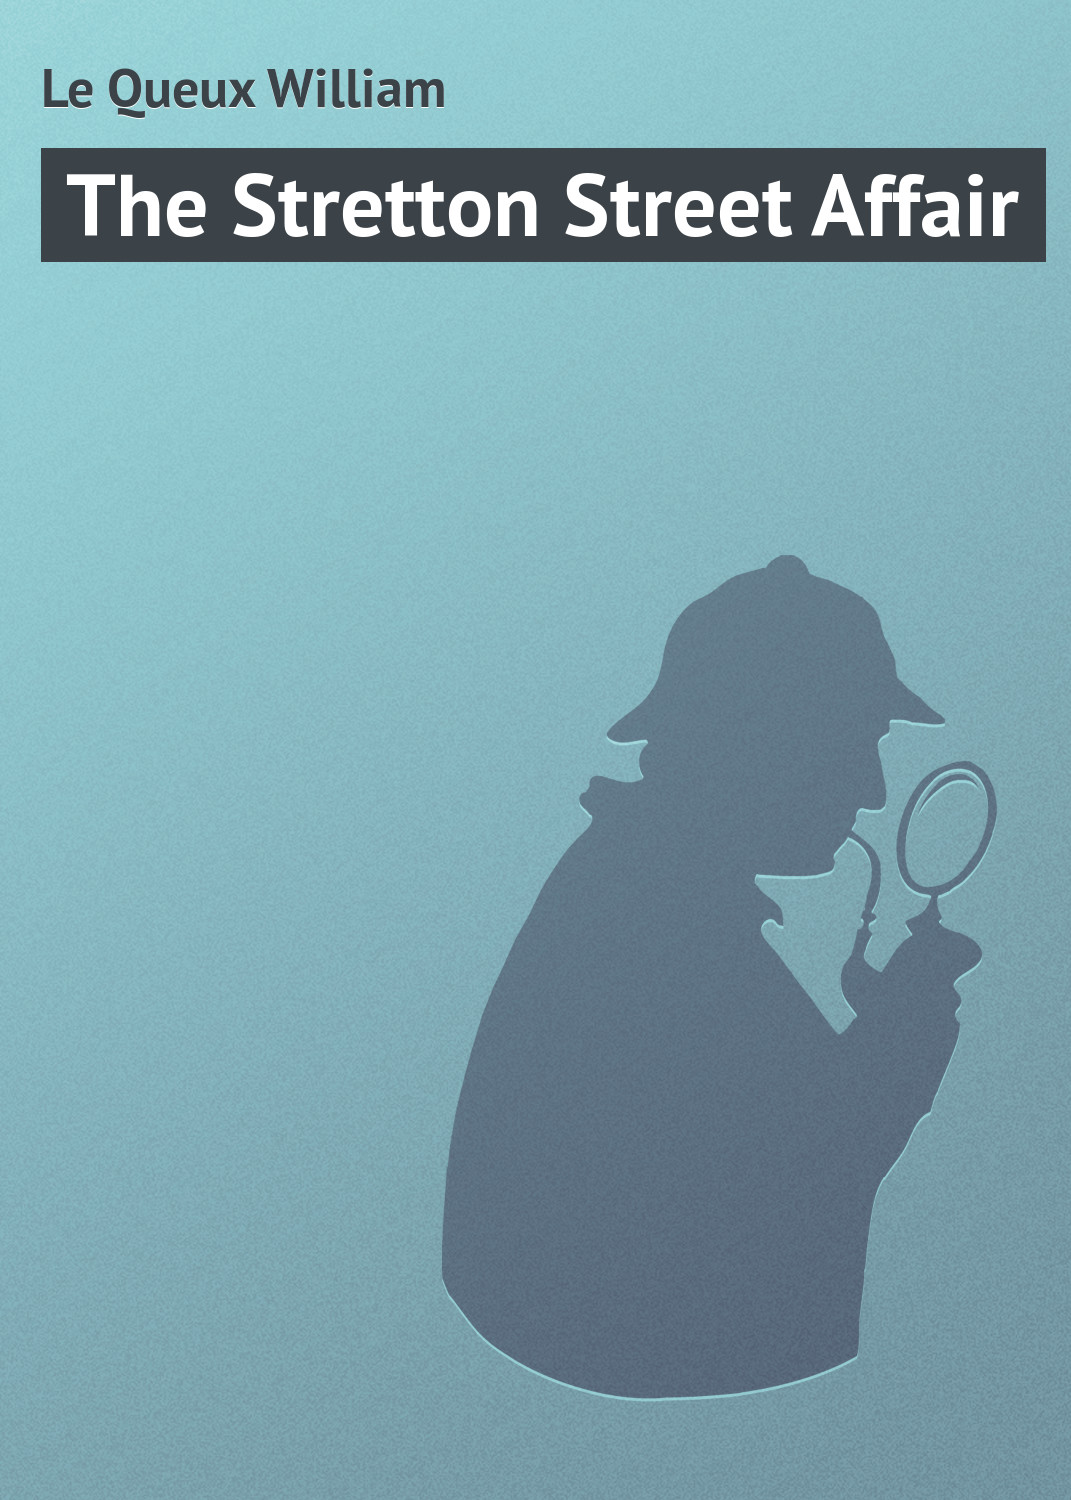 Книга The Stretton Street Affair из серии , созданная William Le Queux, может относится к жанру Зарубежная классика, Классические детективы, Зарубежные детективы, Иностранные языки. Стоимость электронной книги The Stretton Street Affair с идентификатором 23170227 составляет 5.99 руб.